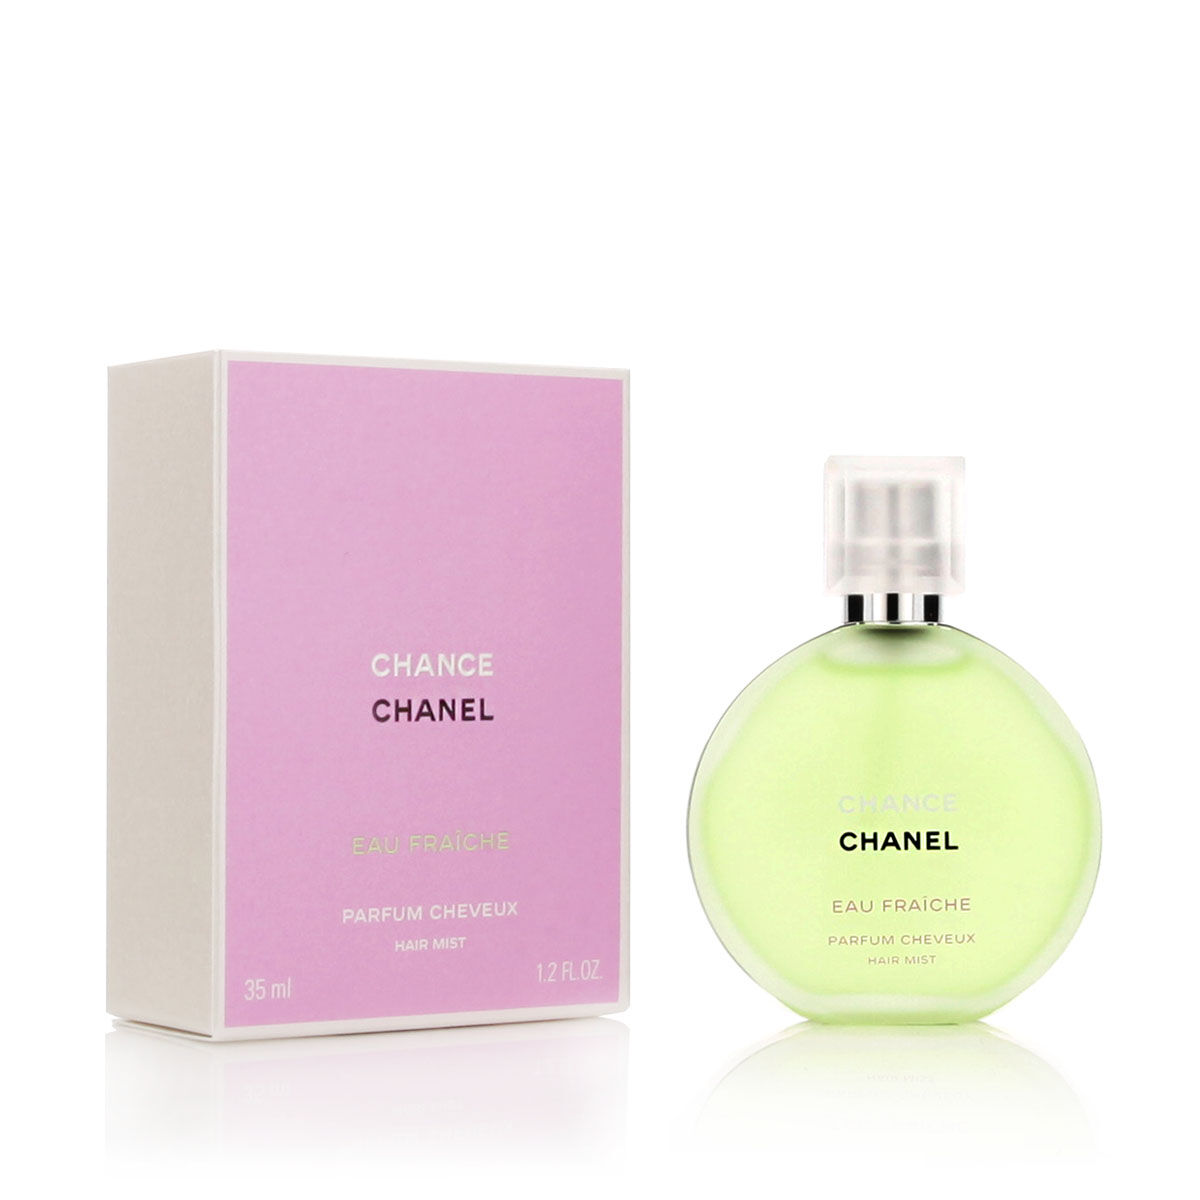 Haar-Duft Chanel Chance Eau Fraiche 35 ml